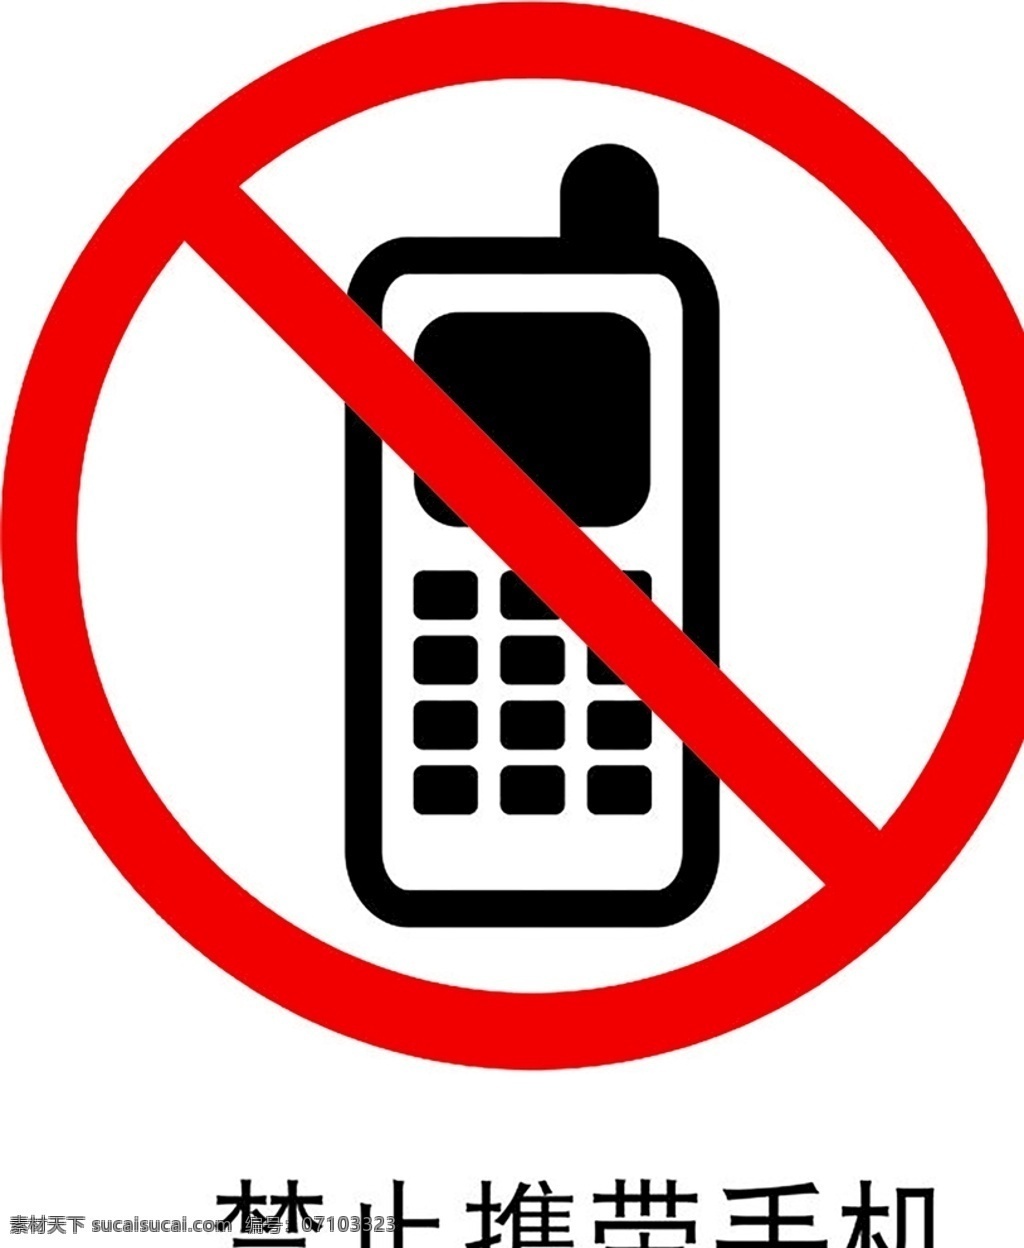 禁止携带手机 安全标识 安全 标识 禁令牌 标志 安全标志展板 标志图标 公共标识标志